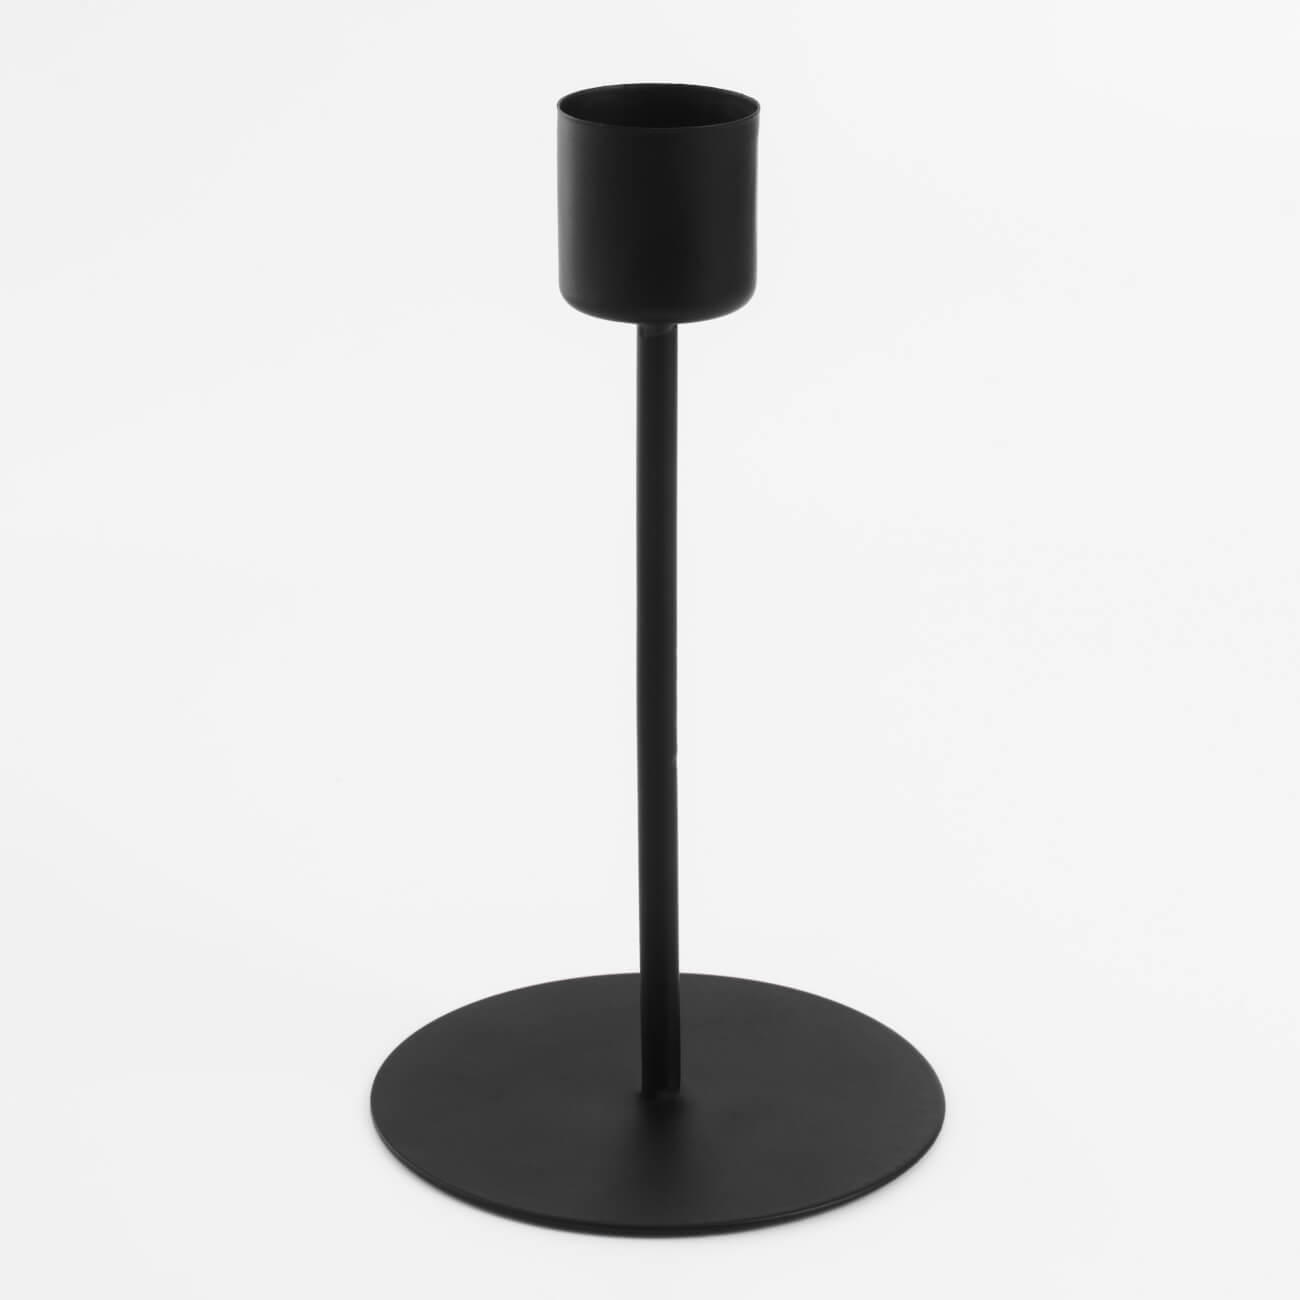 Подсвечник, 15 см, для тонкой свечи, на ножке, металл, черный, Black style изображение № 1